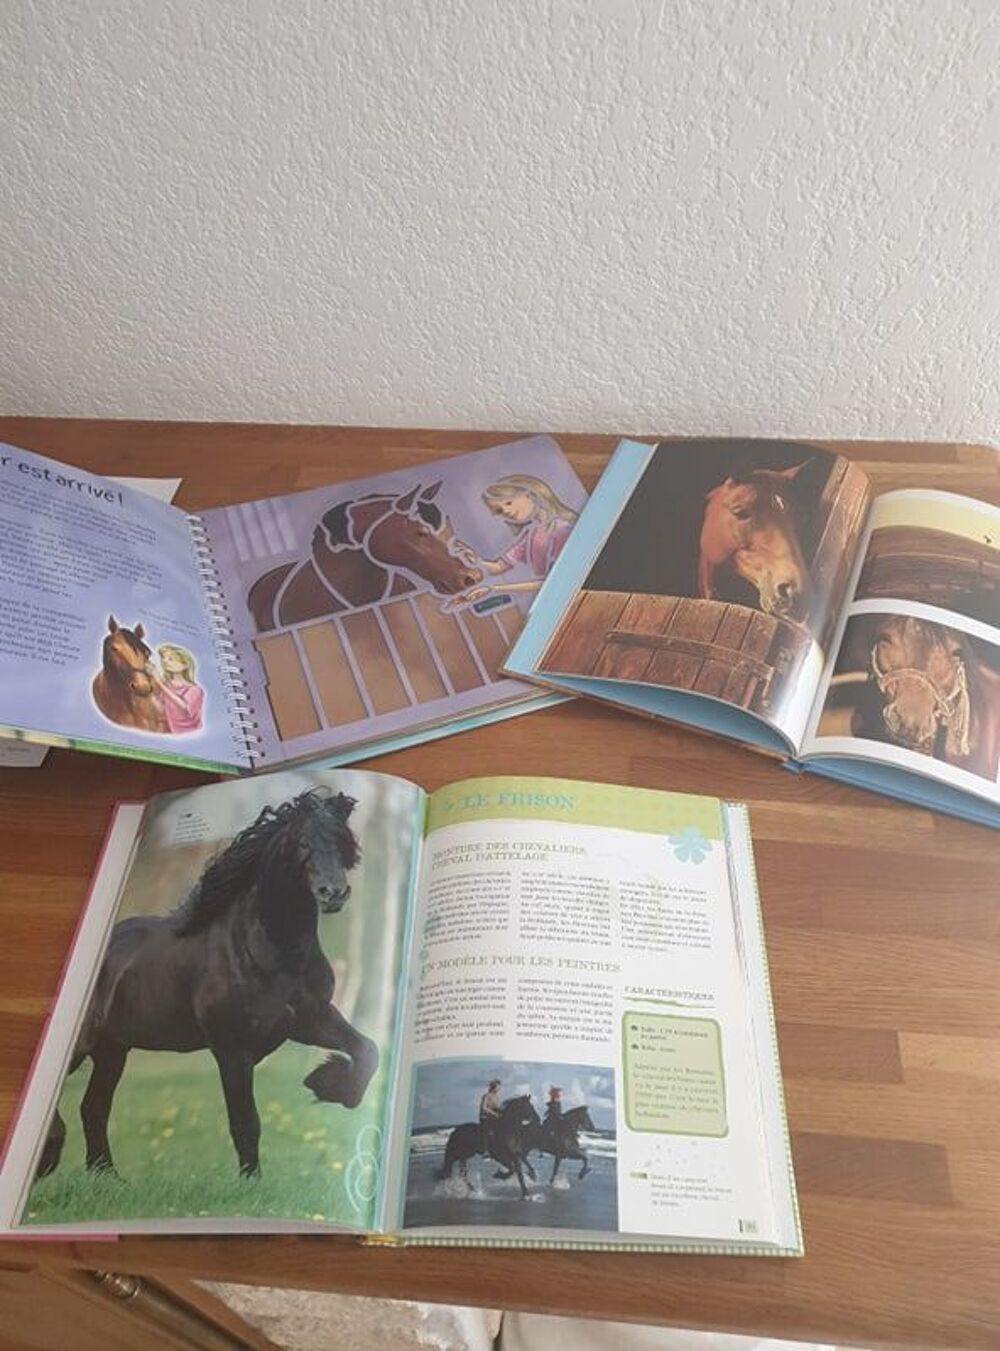 Lot de livres sur les chevaux dont un avec des pochoirs Livres et BD